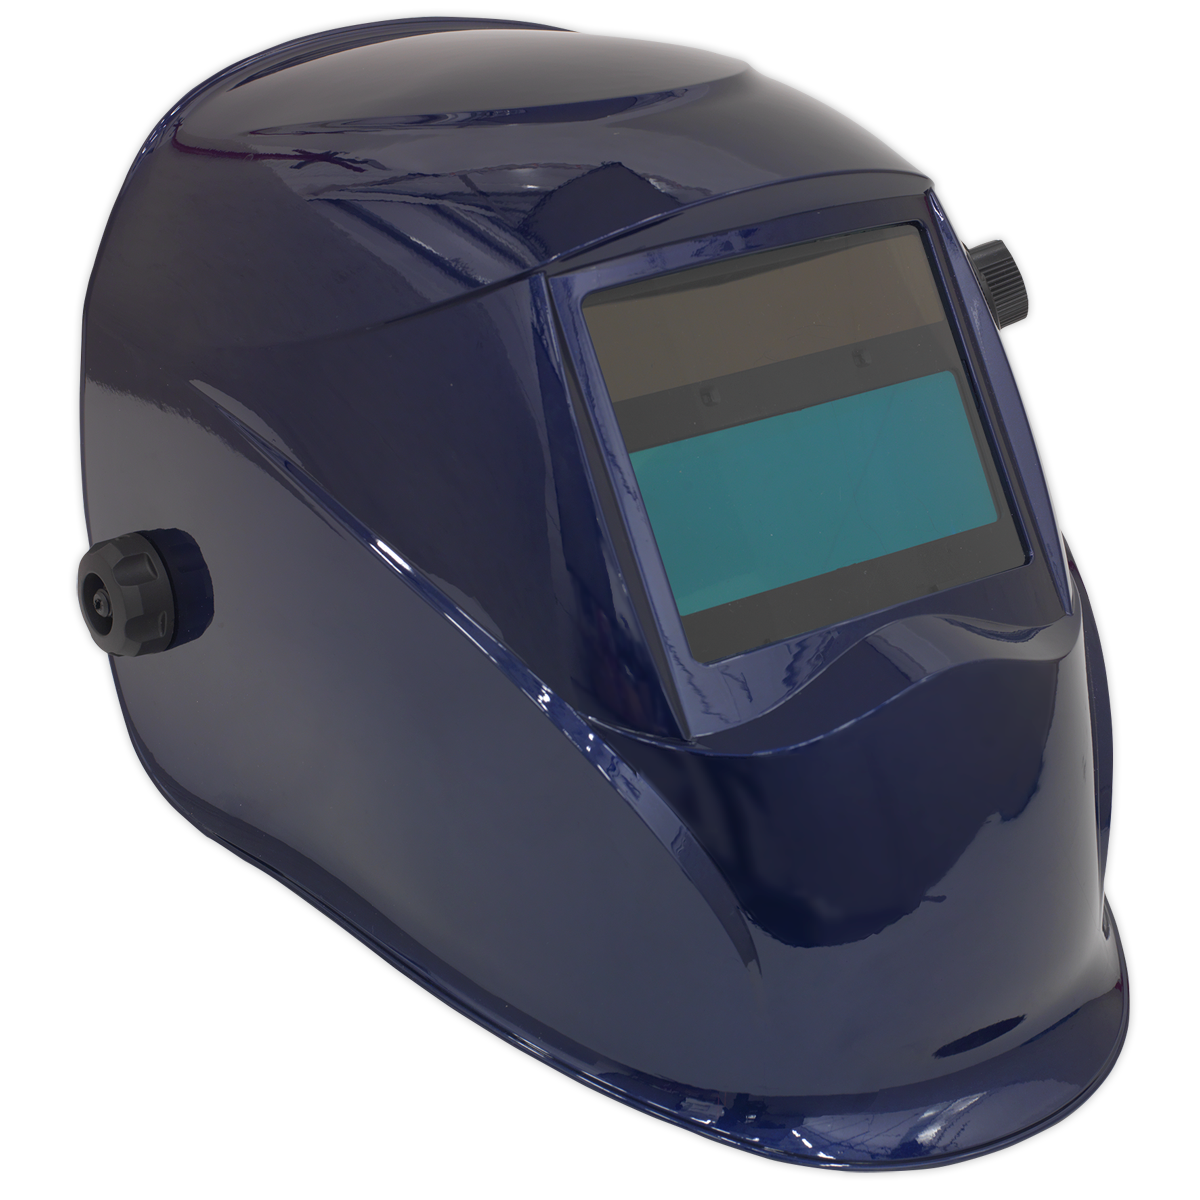 Welding Helmet Auto Darkening - Shade 9-13 - Blue - PWH611 - Farming Parts